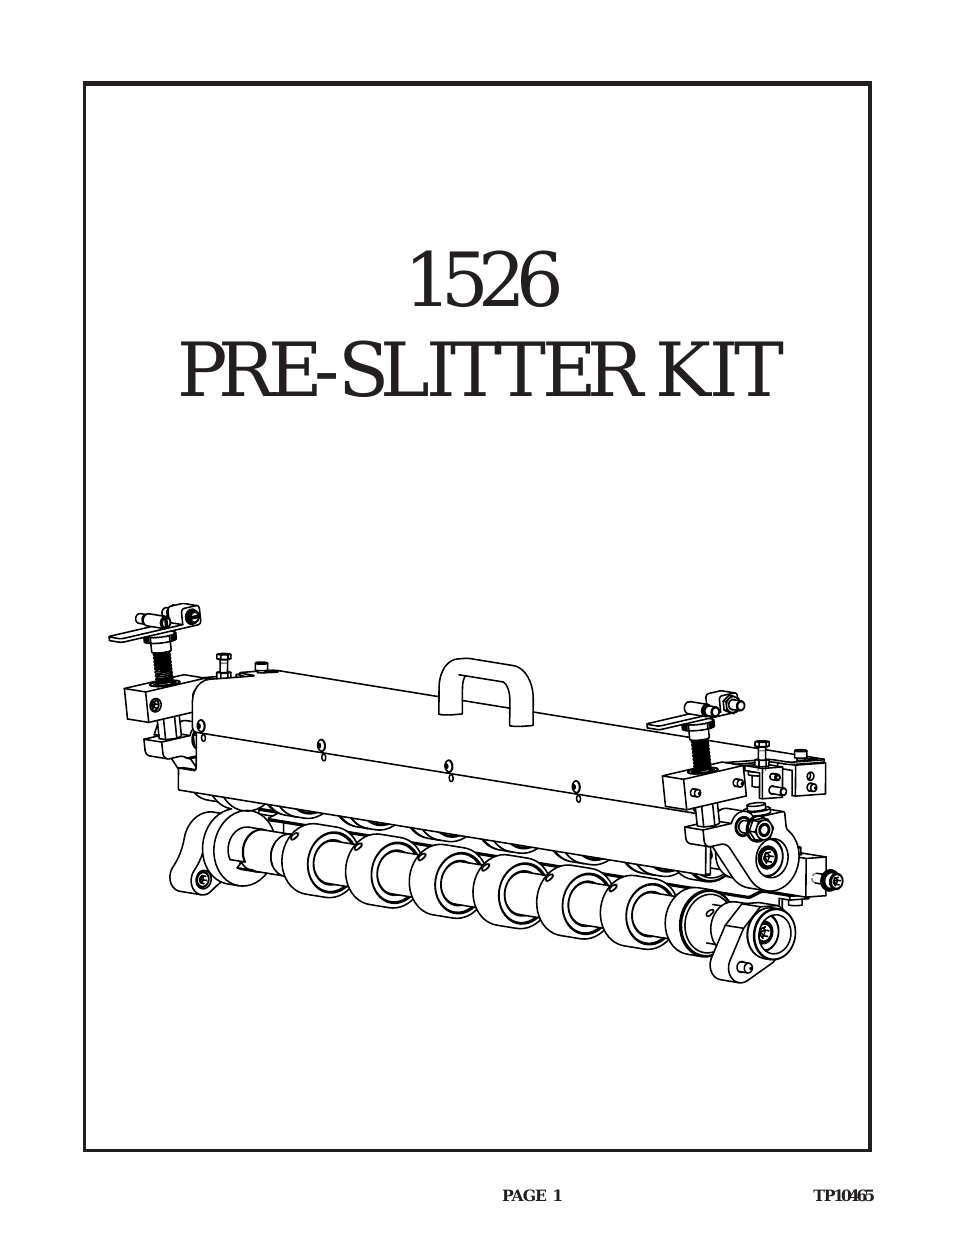 BAUM 26: Pre-slitter kit (early 2004)